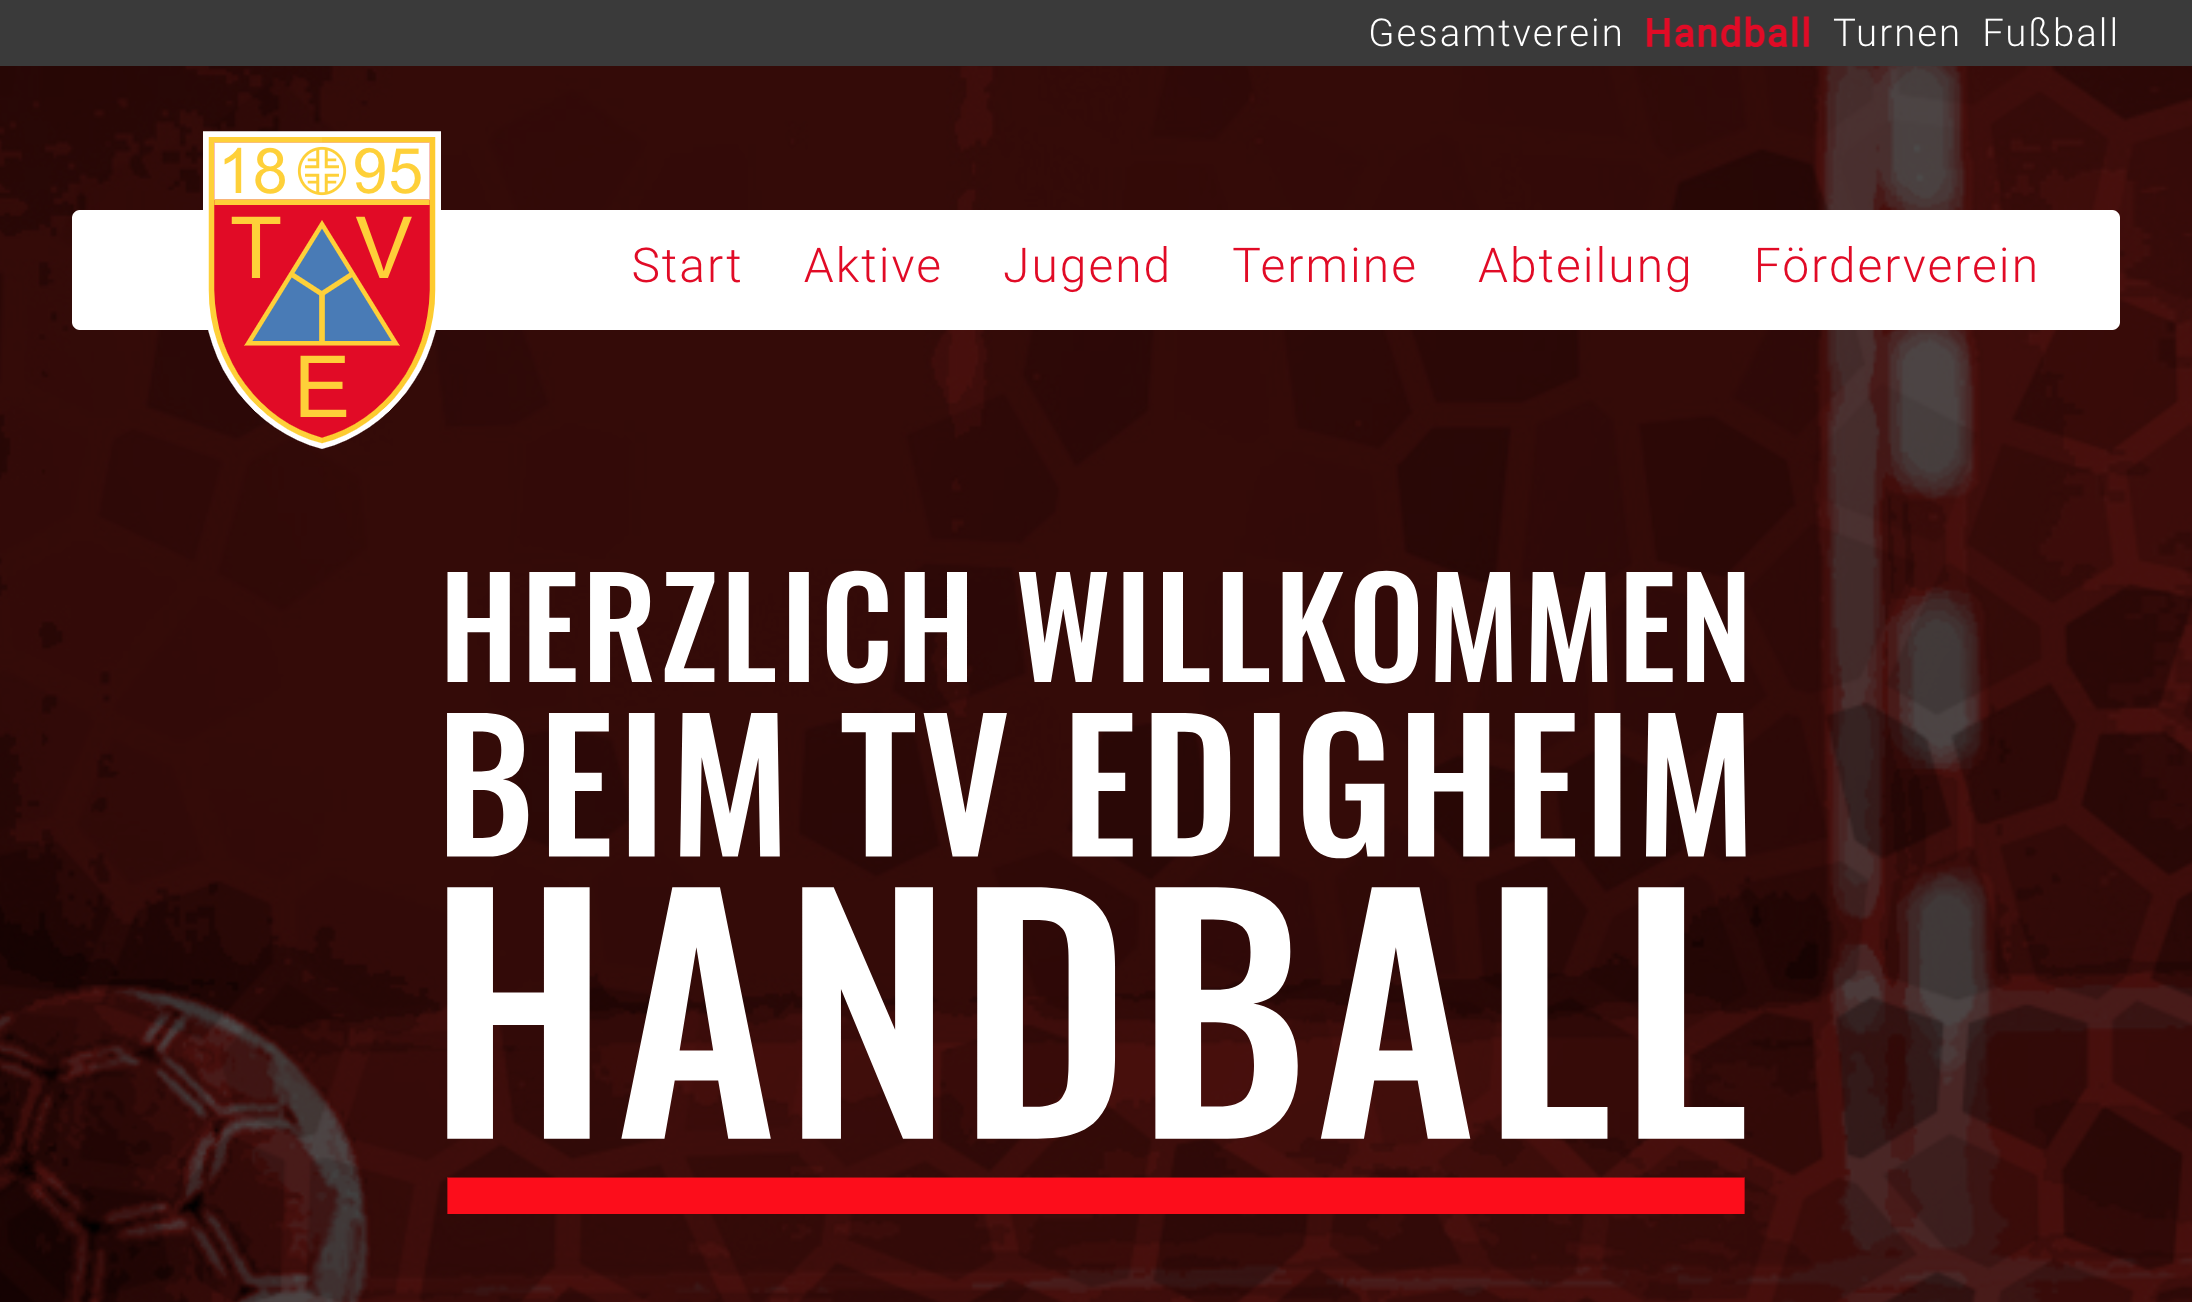 Screenshot of handball.tv-edigheim.de showing the start page